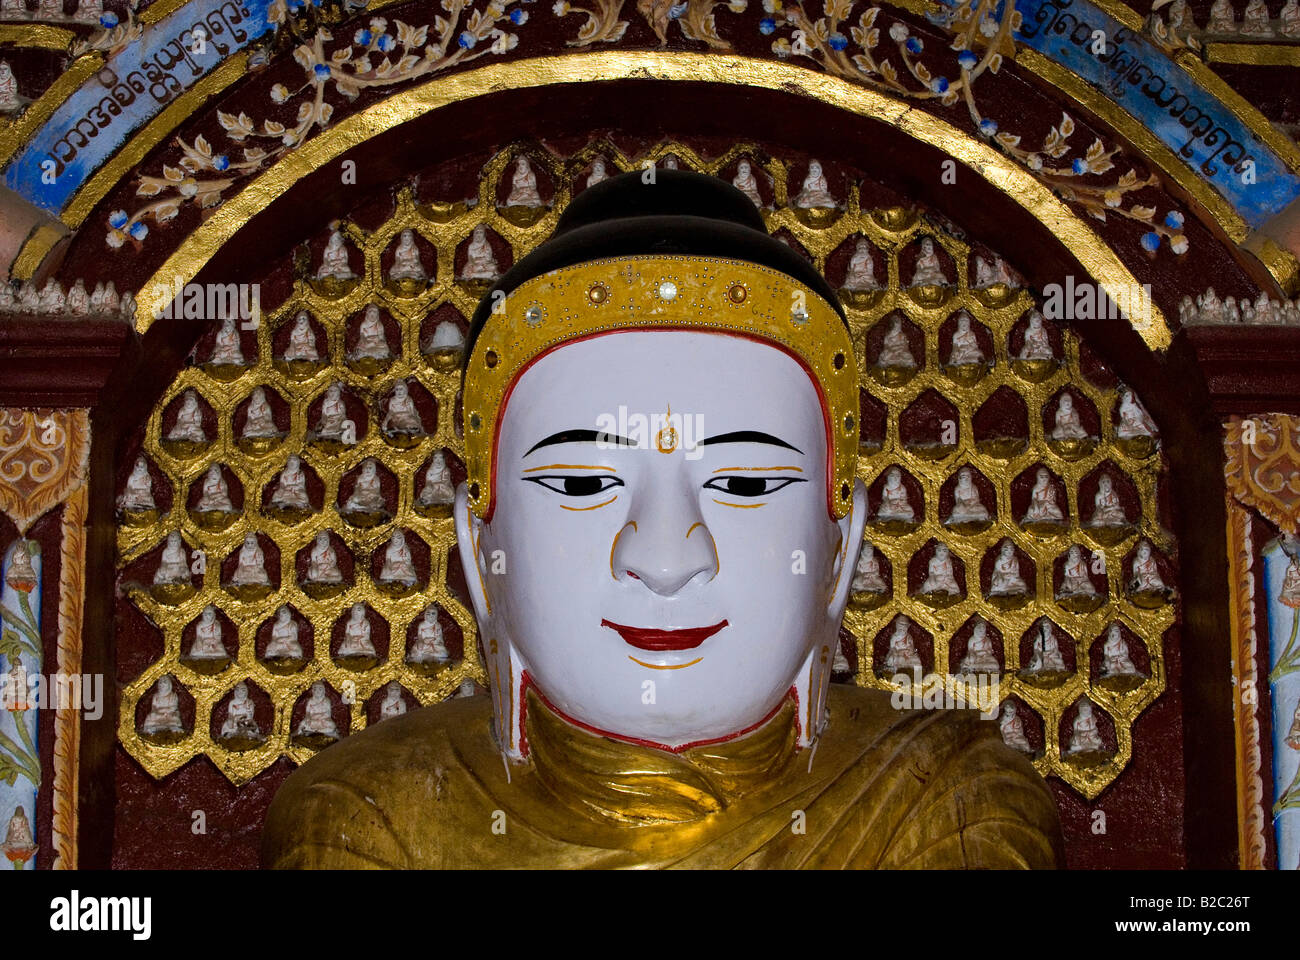 Portrait de Bouddha en face de beaucoup de petites figures de Bouddha, Pagode Thanboddhay, Monywa, Myanmar, en Asie du sud-est Banque D'Images